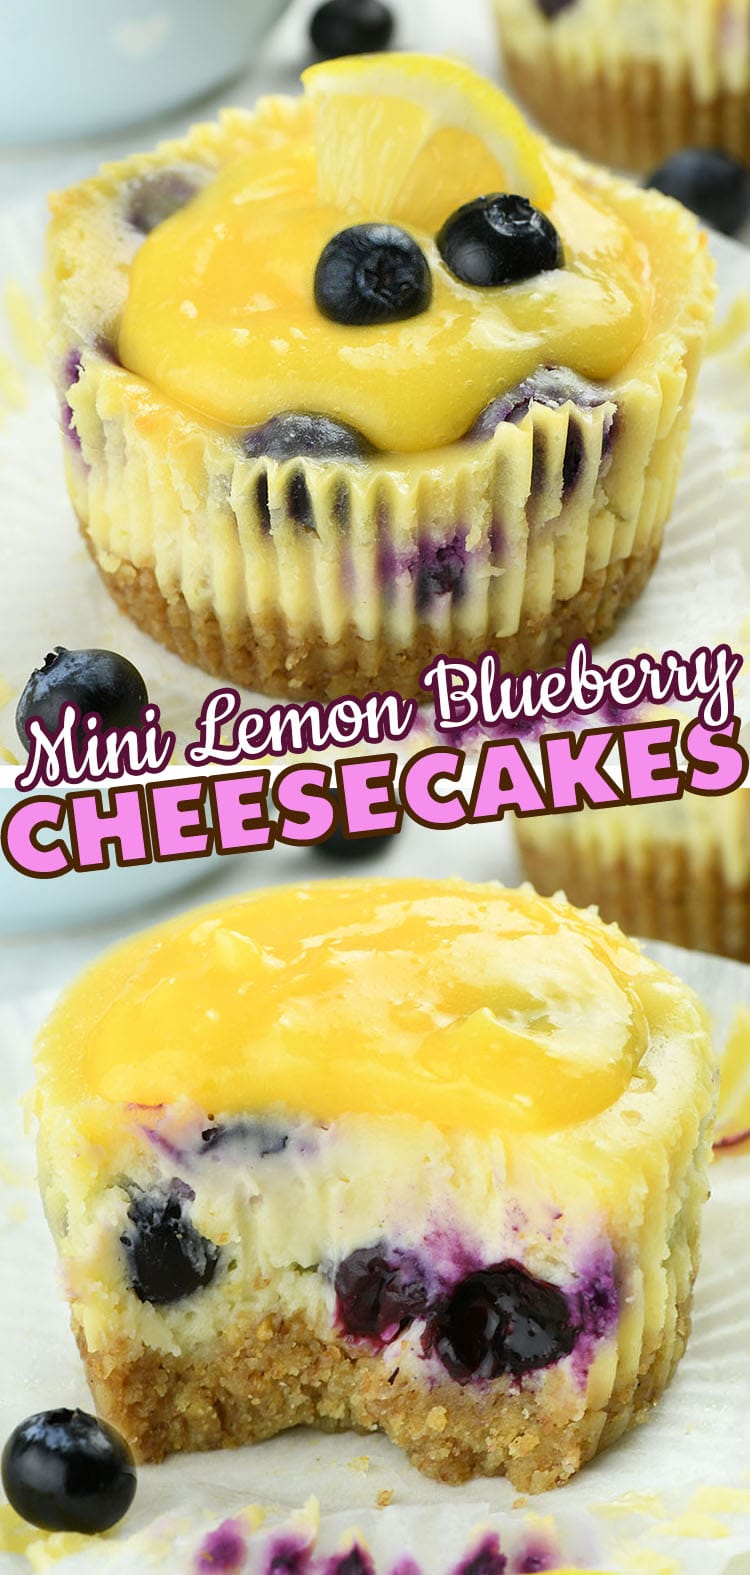 Mini Lemon Blueberry Cheesecakes